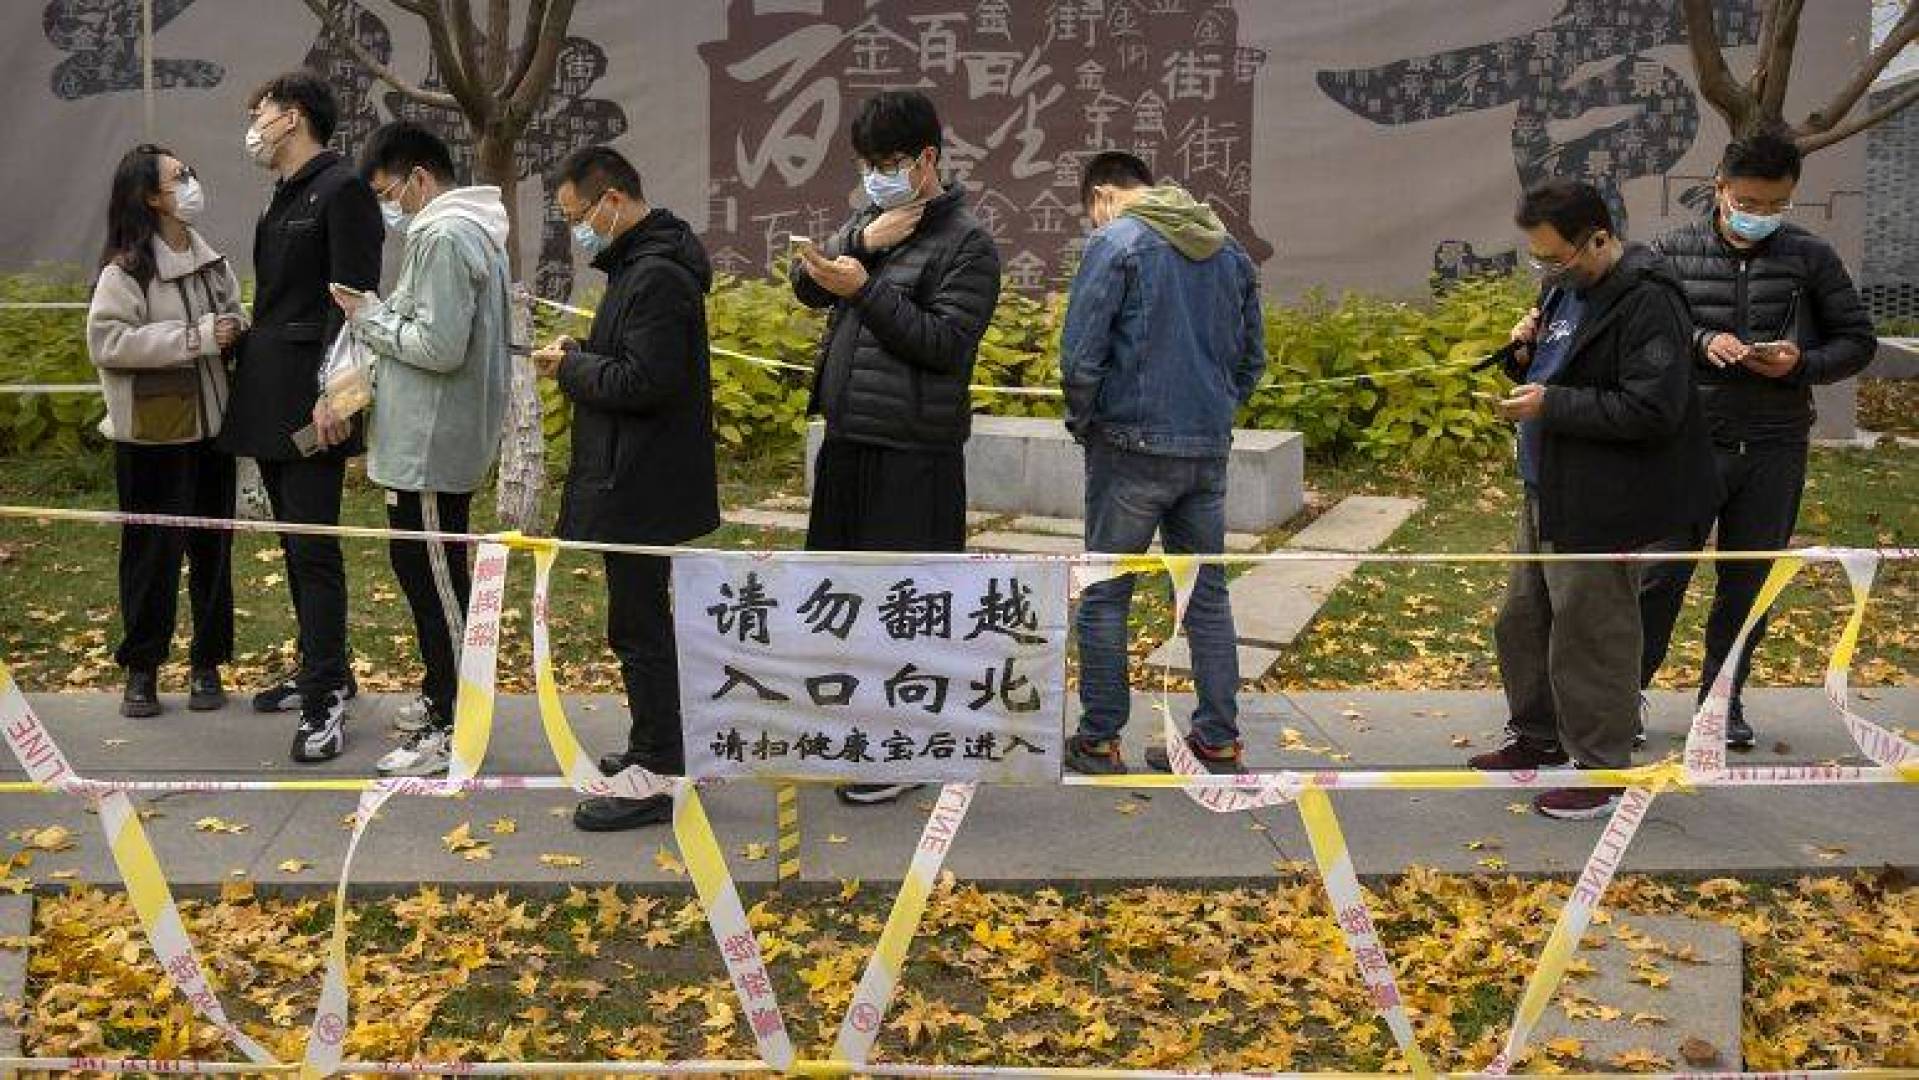 اغلاق المدارس والمحلات التجارية في الصين مع ارتفاع الإصابات بكورونا وتسجيل حالتي وفاة